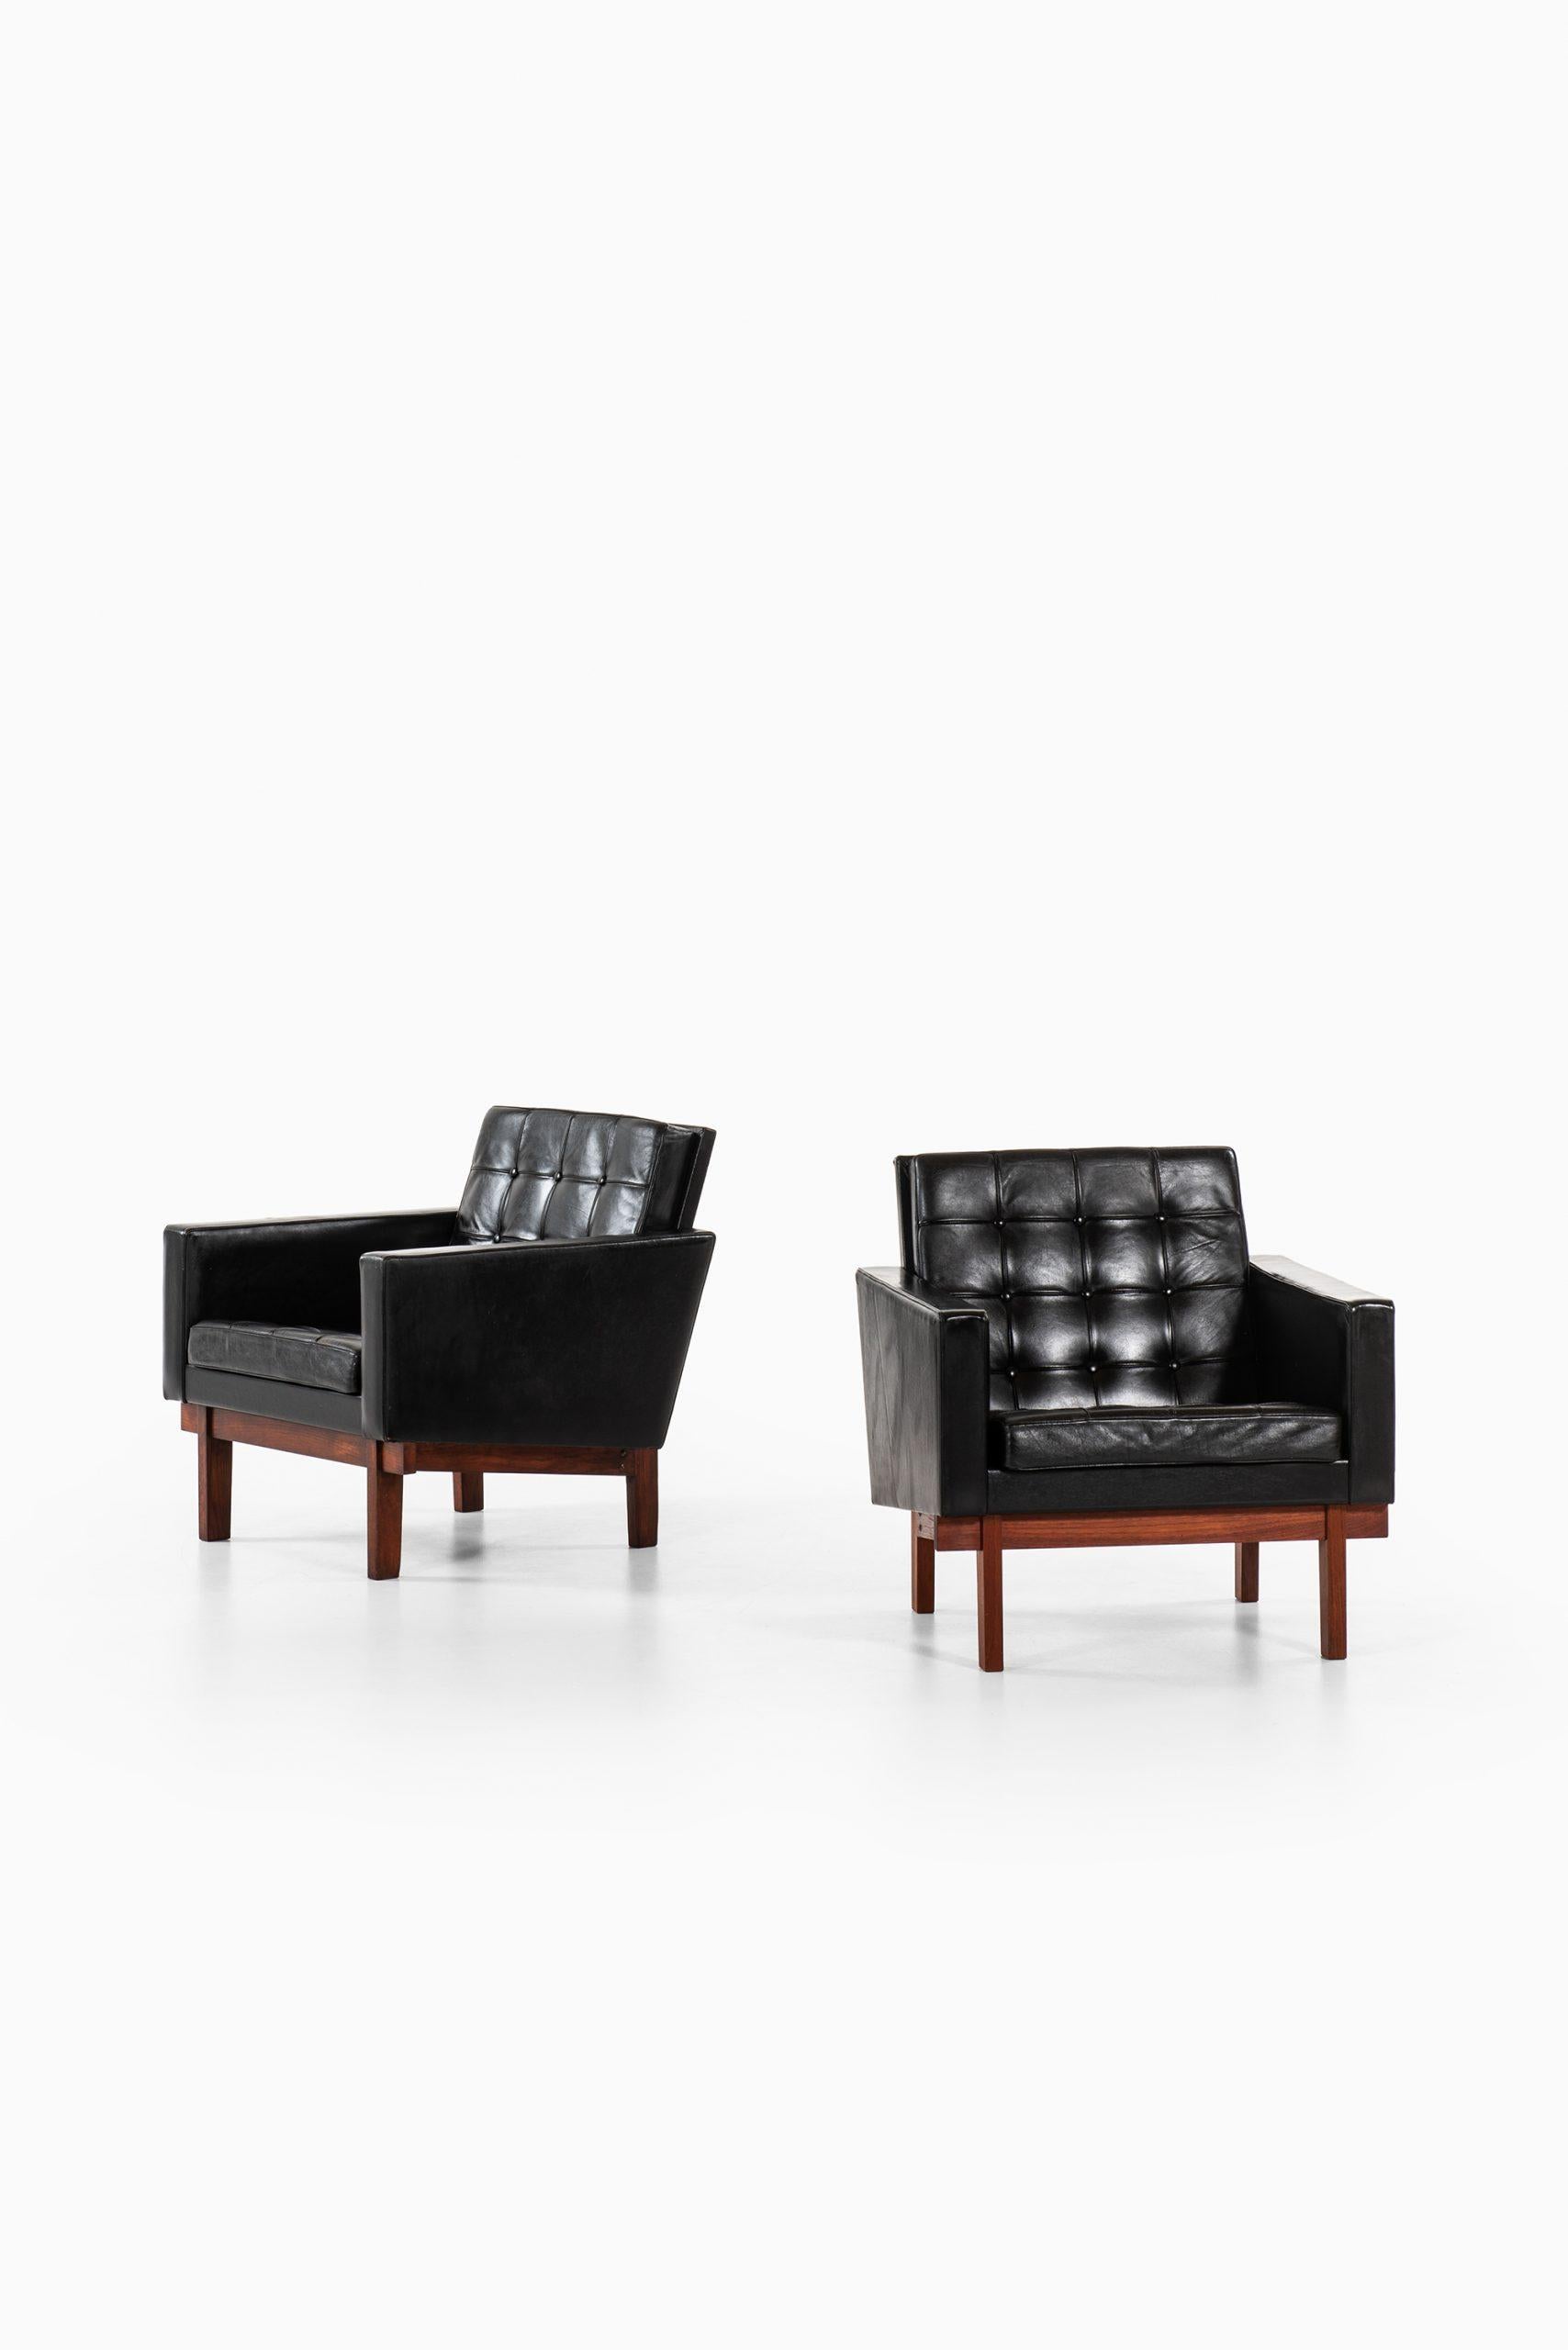 Rare paire de fauteuils conçus par Karl-Erik Ekselius. Produit par JOC en Suède.